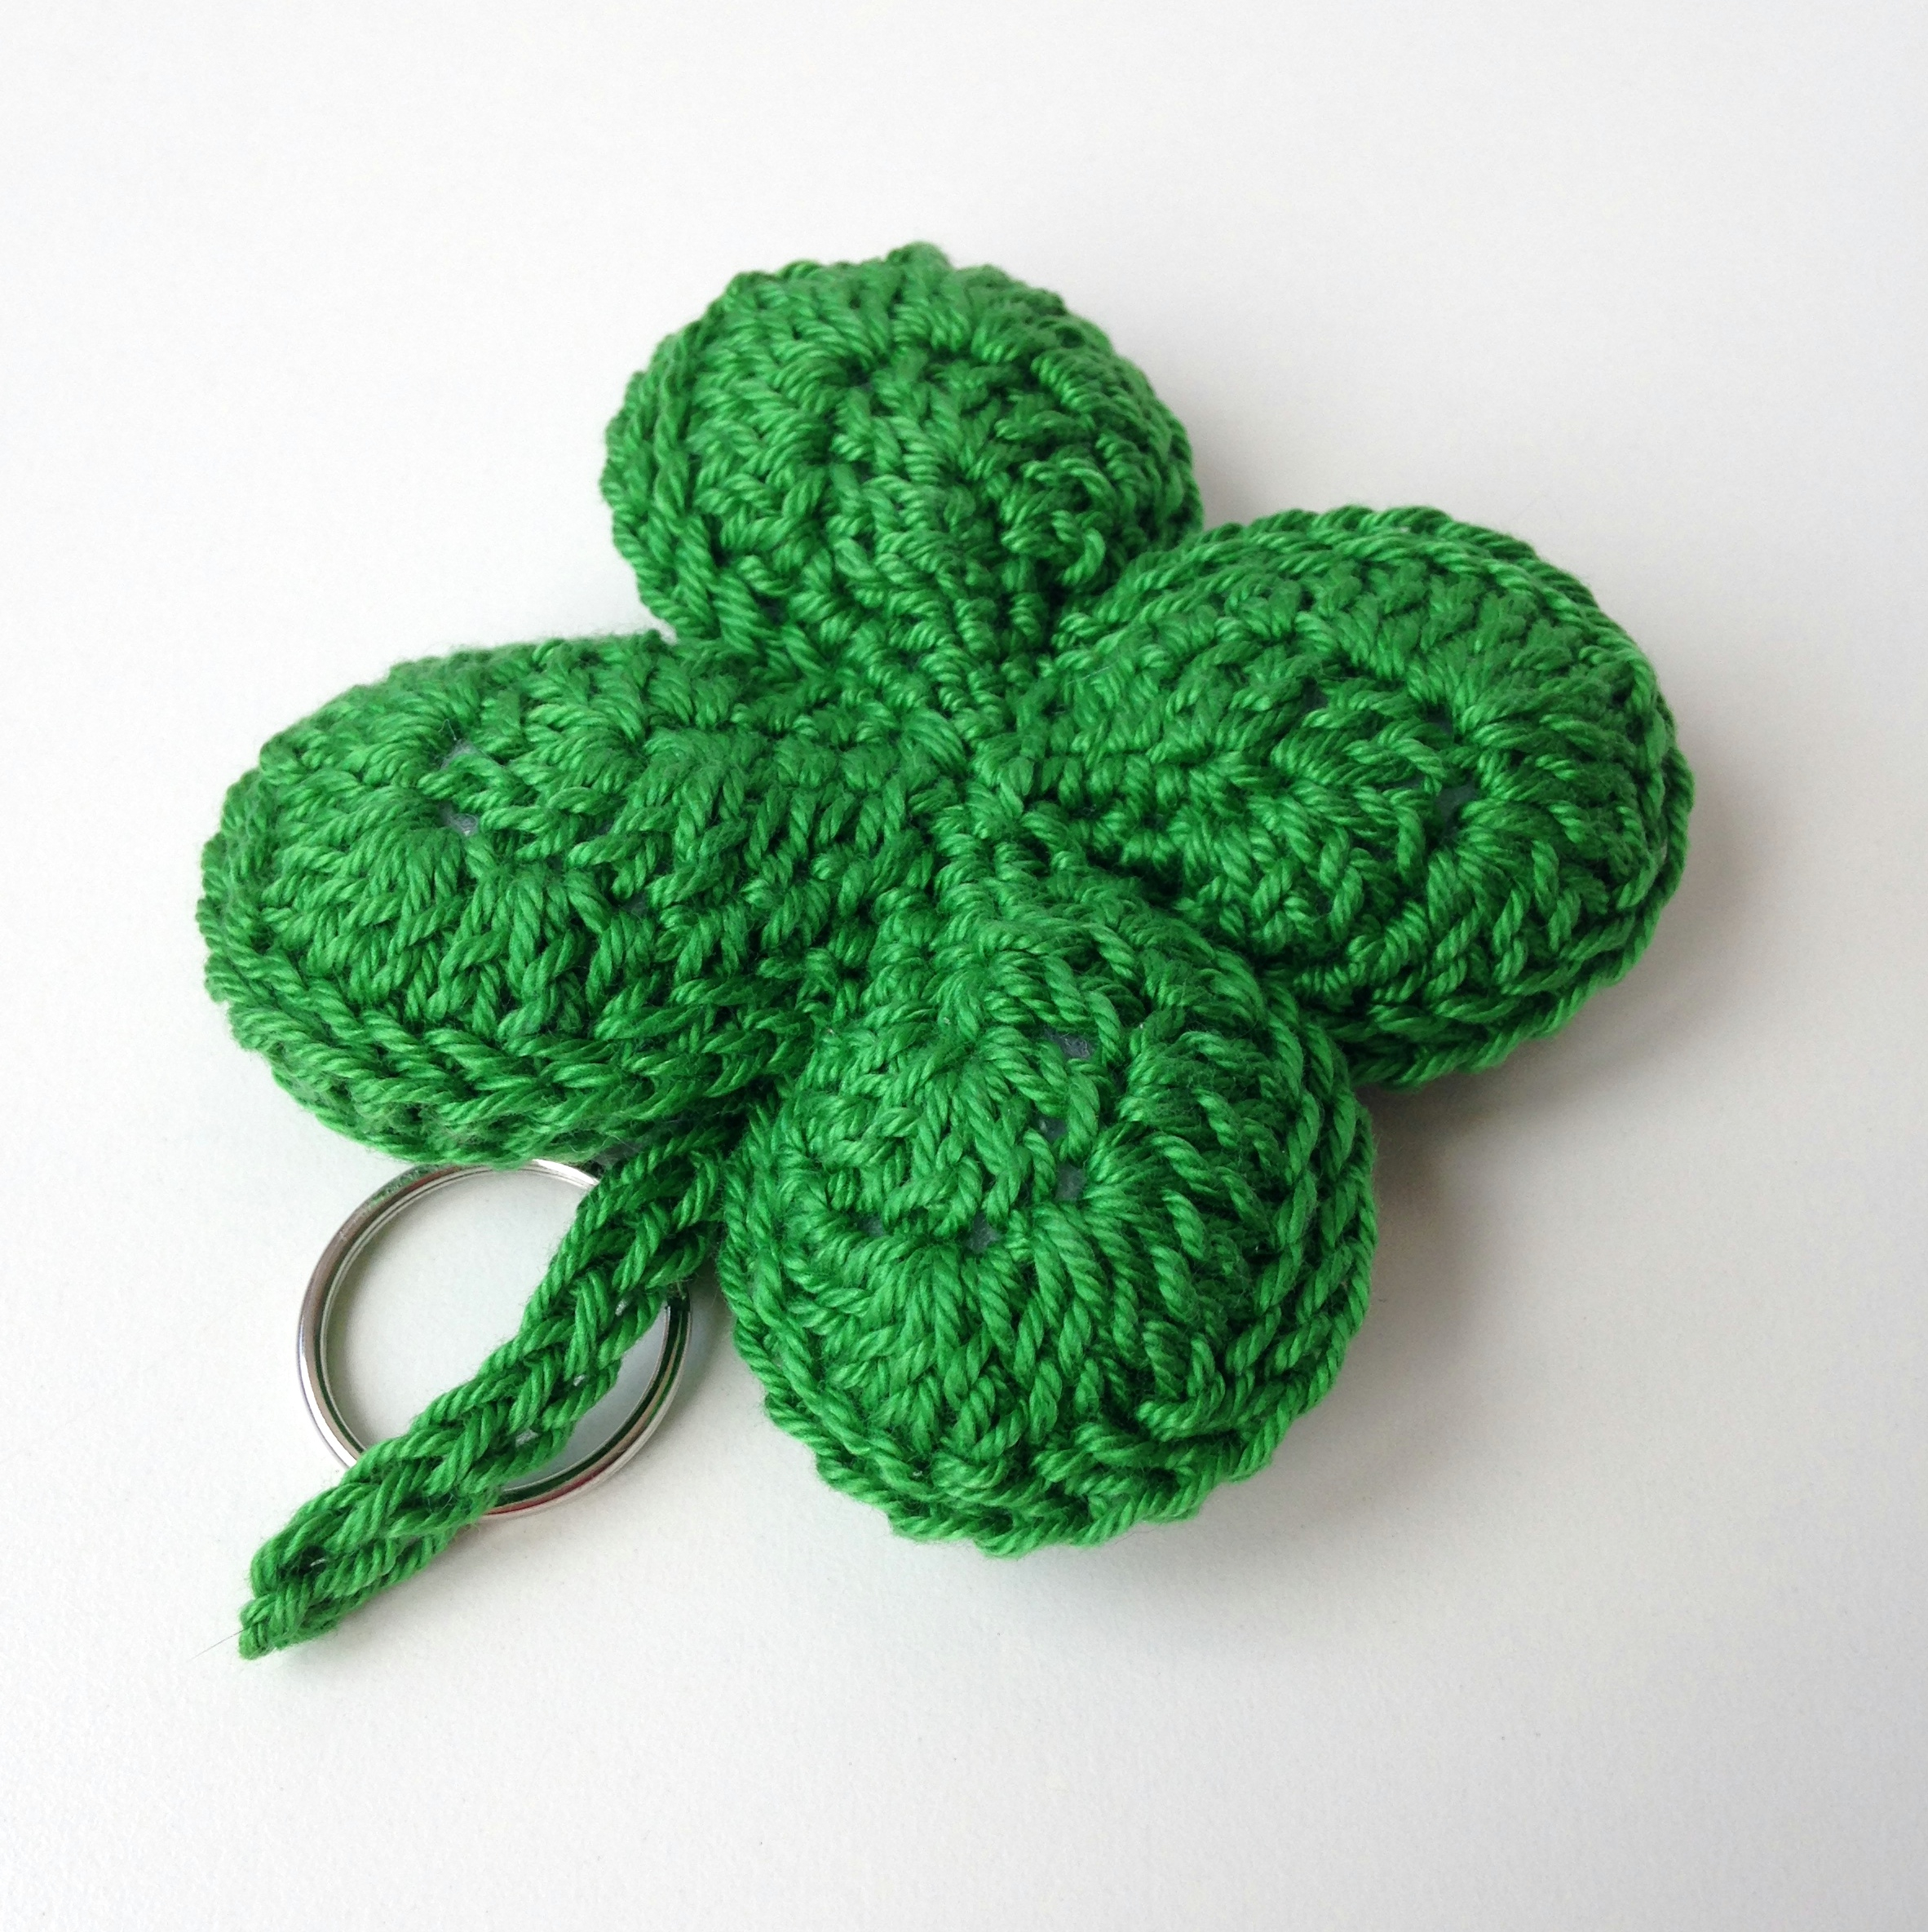 Clover Crochet Pattern Free Crochet Pattern For 3 Leaf Clover Pakbit For